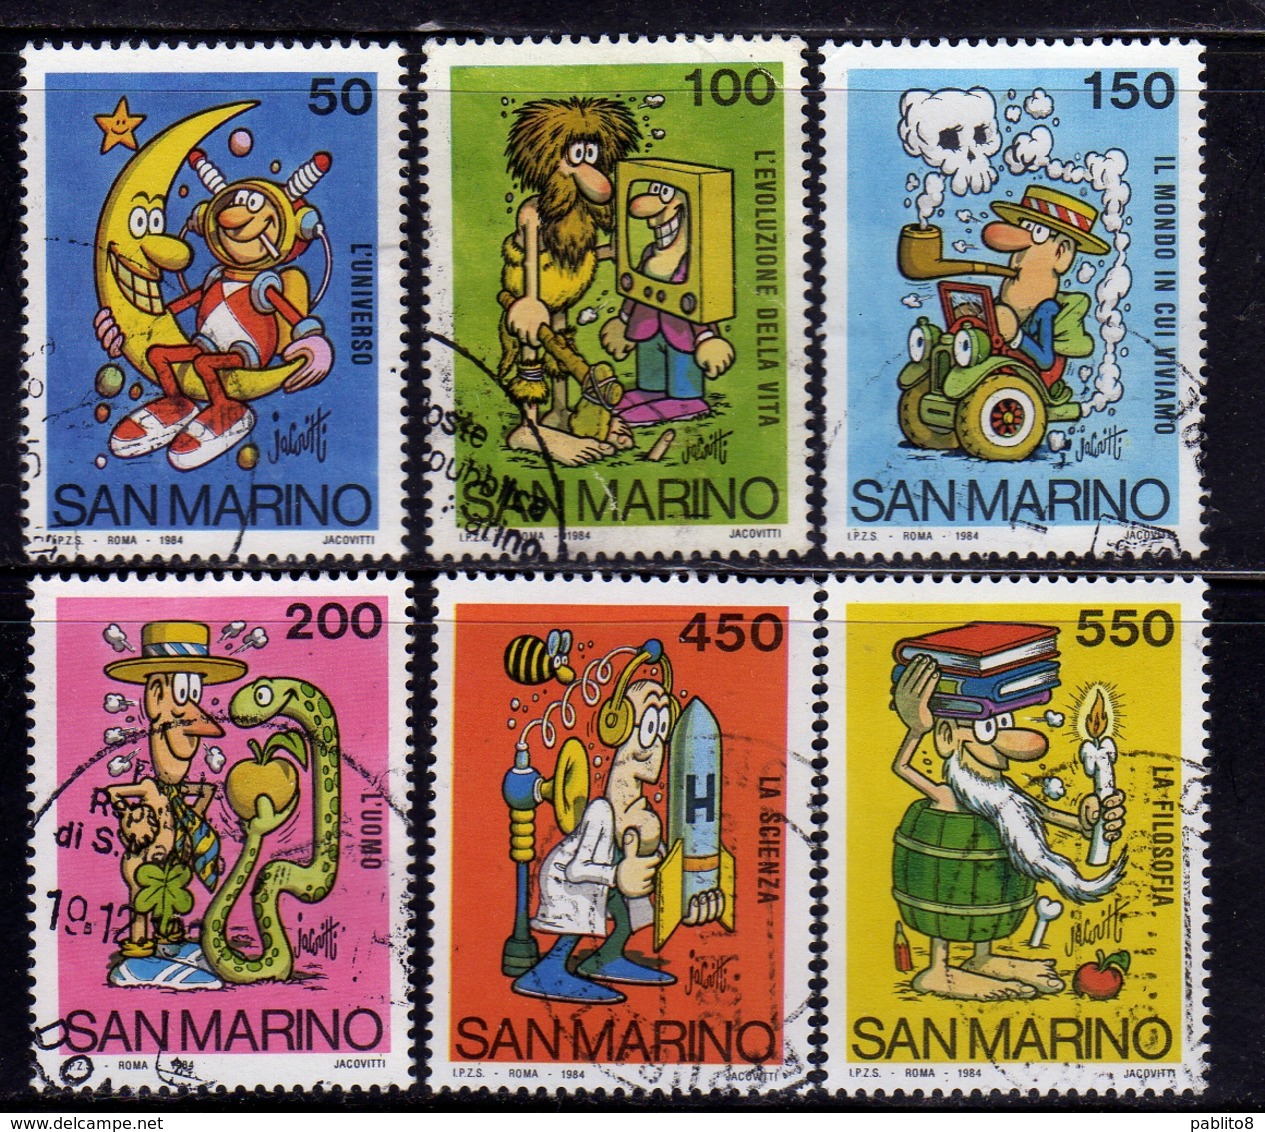 REPUBBLICA DI SAN MARINO1984 SCUOLA E FILATELIA BY JACOVITTI SCHOOL AND PHILATELY SERIE COMPLETA COMPLETE SET USATA USED - Used Stamps